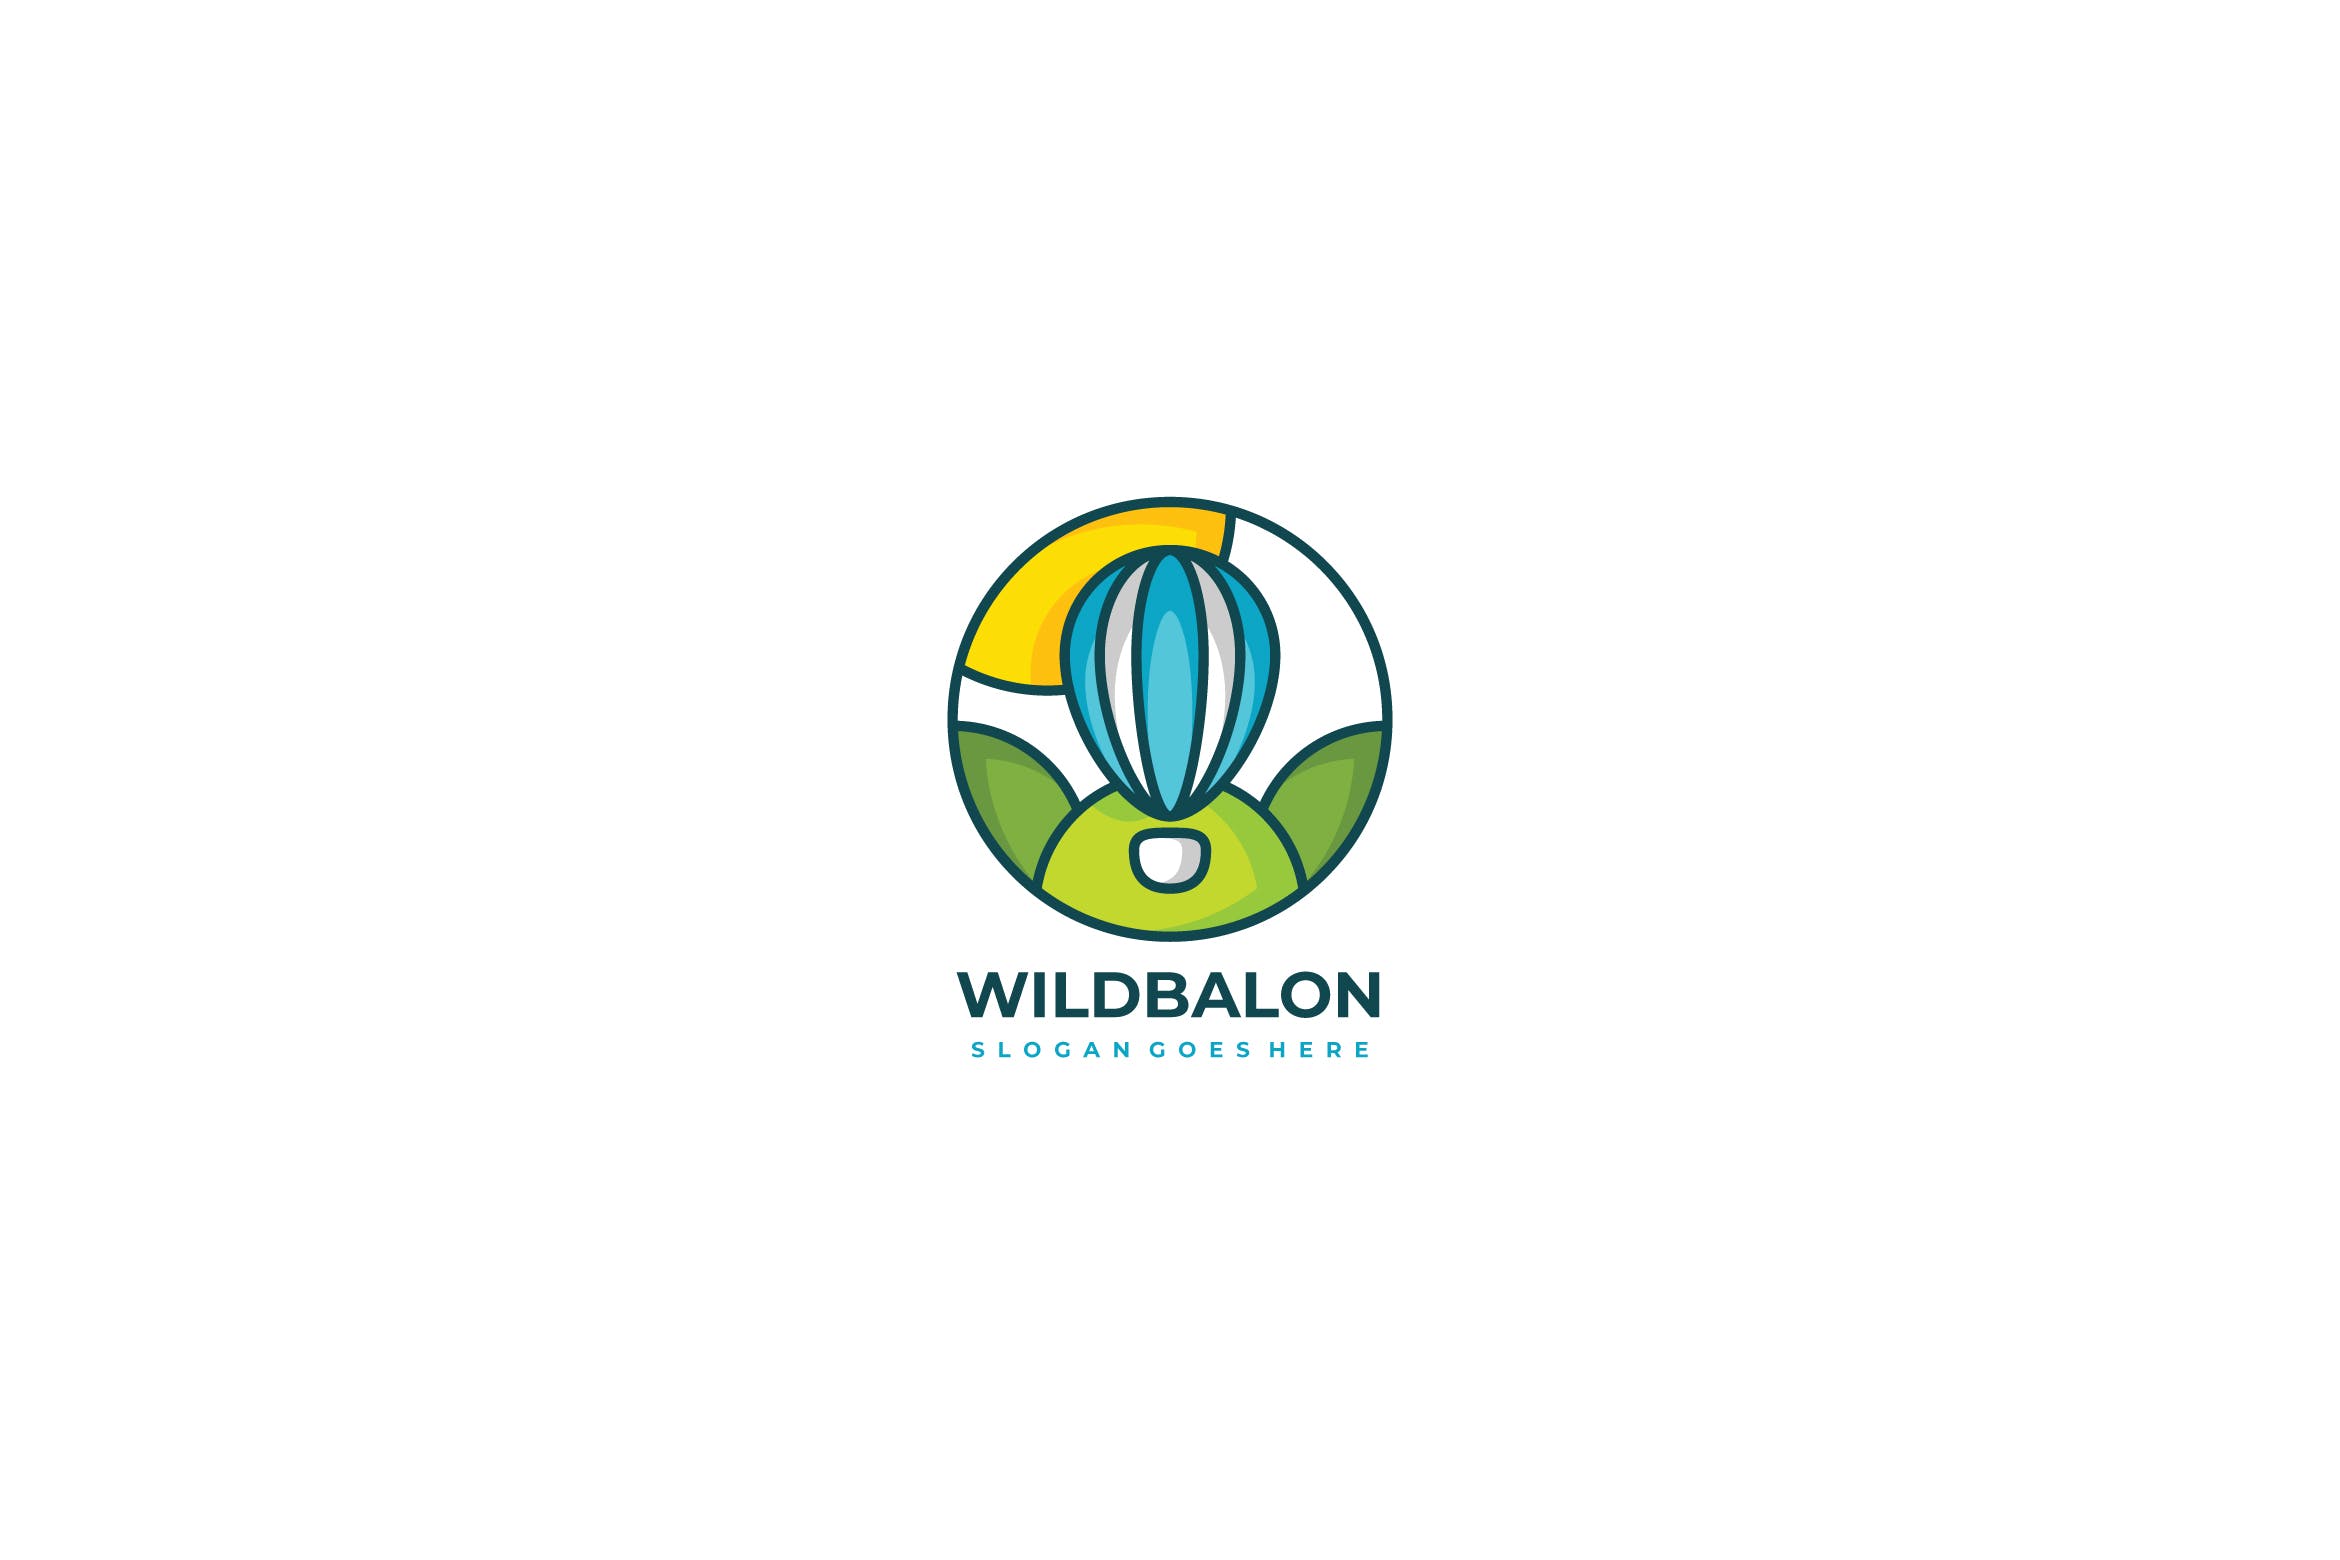 彩色热气球Logo设计第一素材精选模板 Wild Air Ballon Logo插图